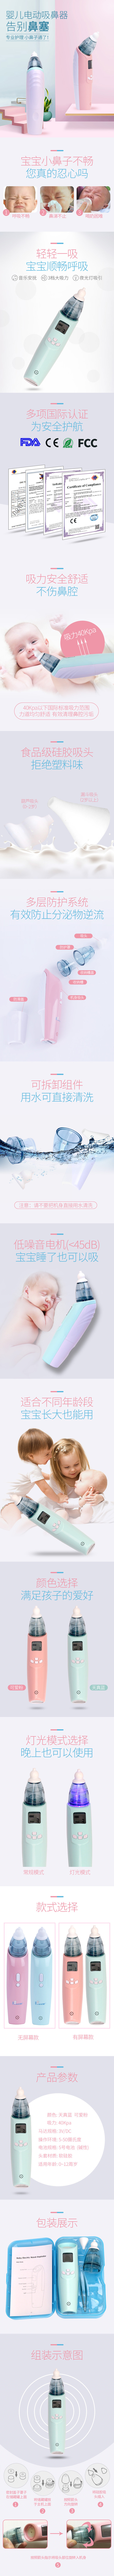 淘宝美工视觉者婴儿吸鼻器婴儿母婴用品详情页作品